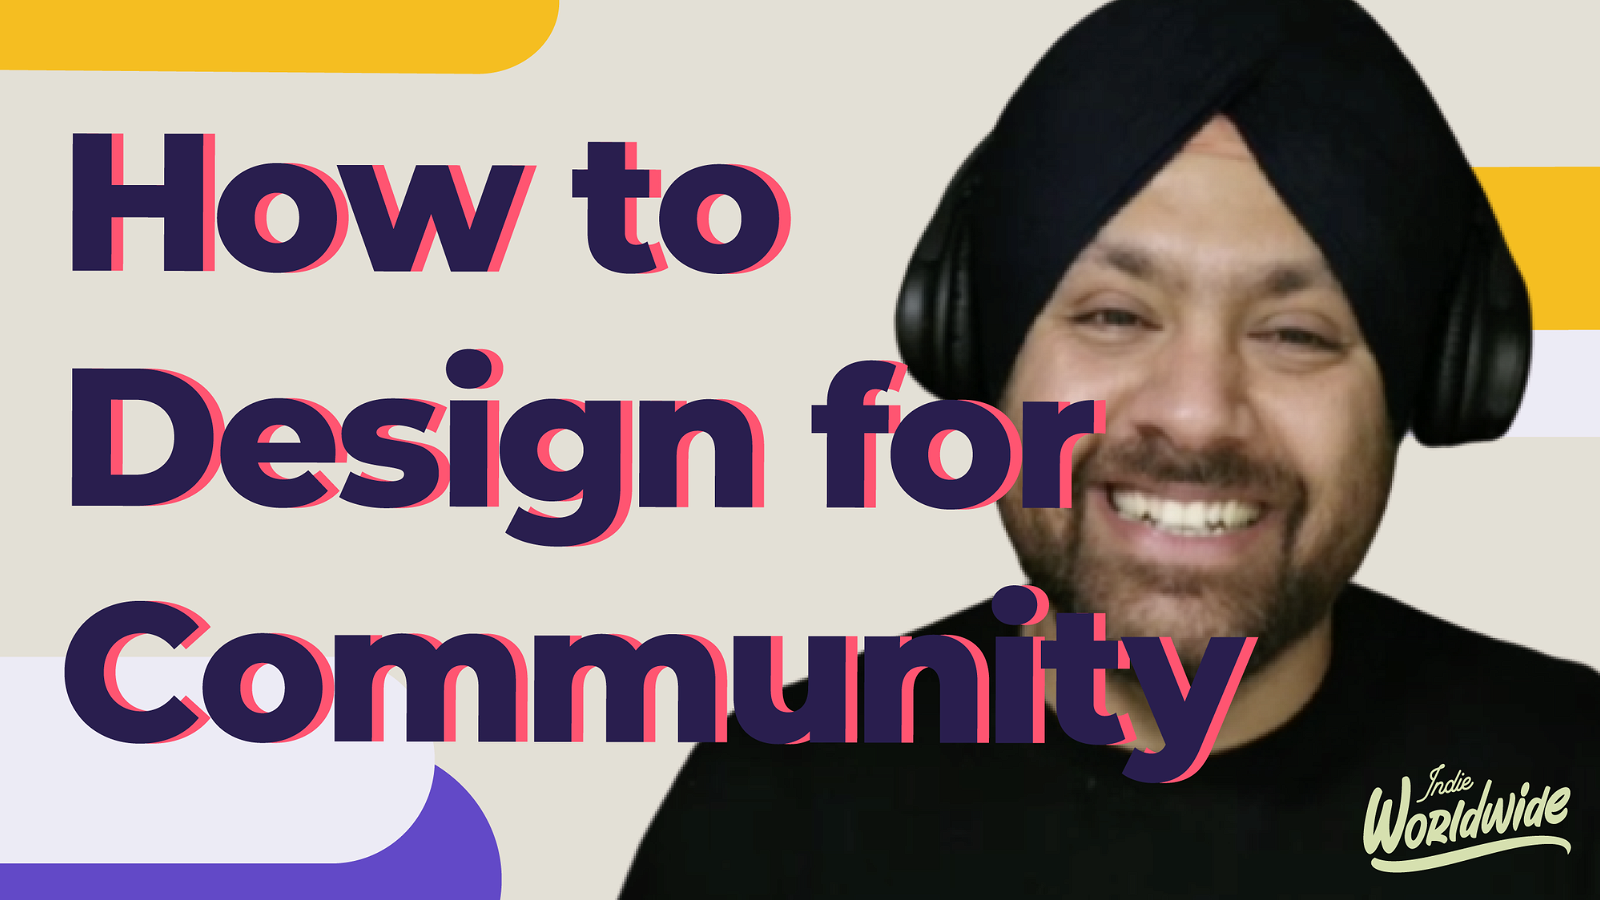 
How to design a community - Preet Singh, DesignX